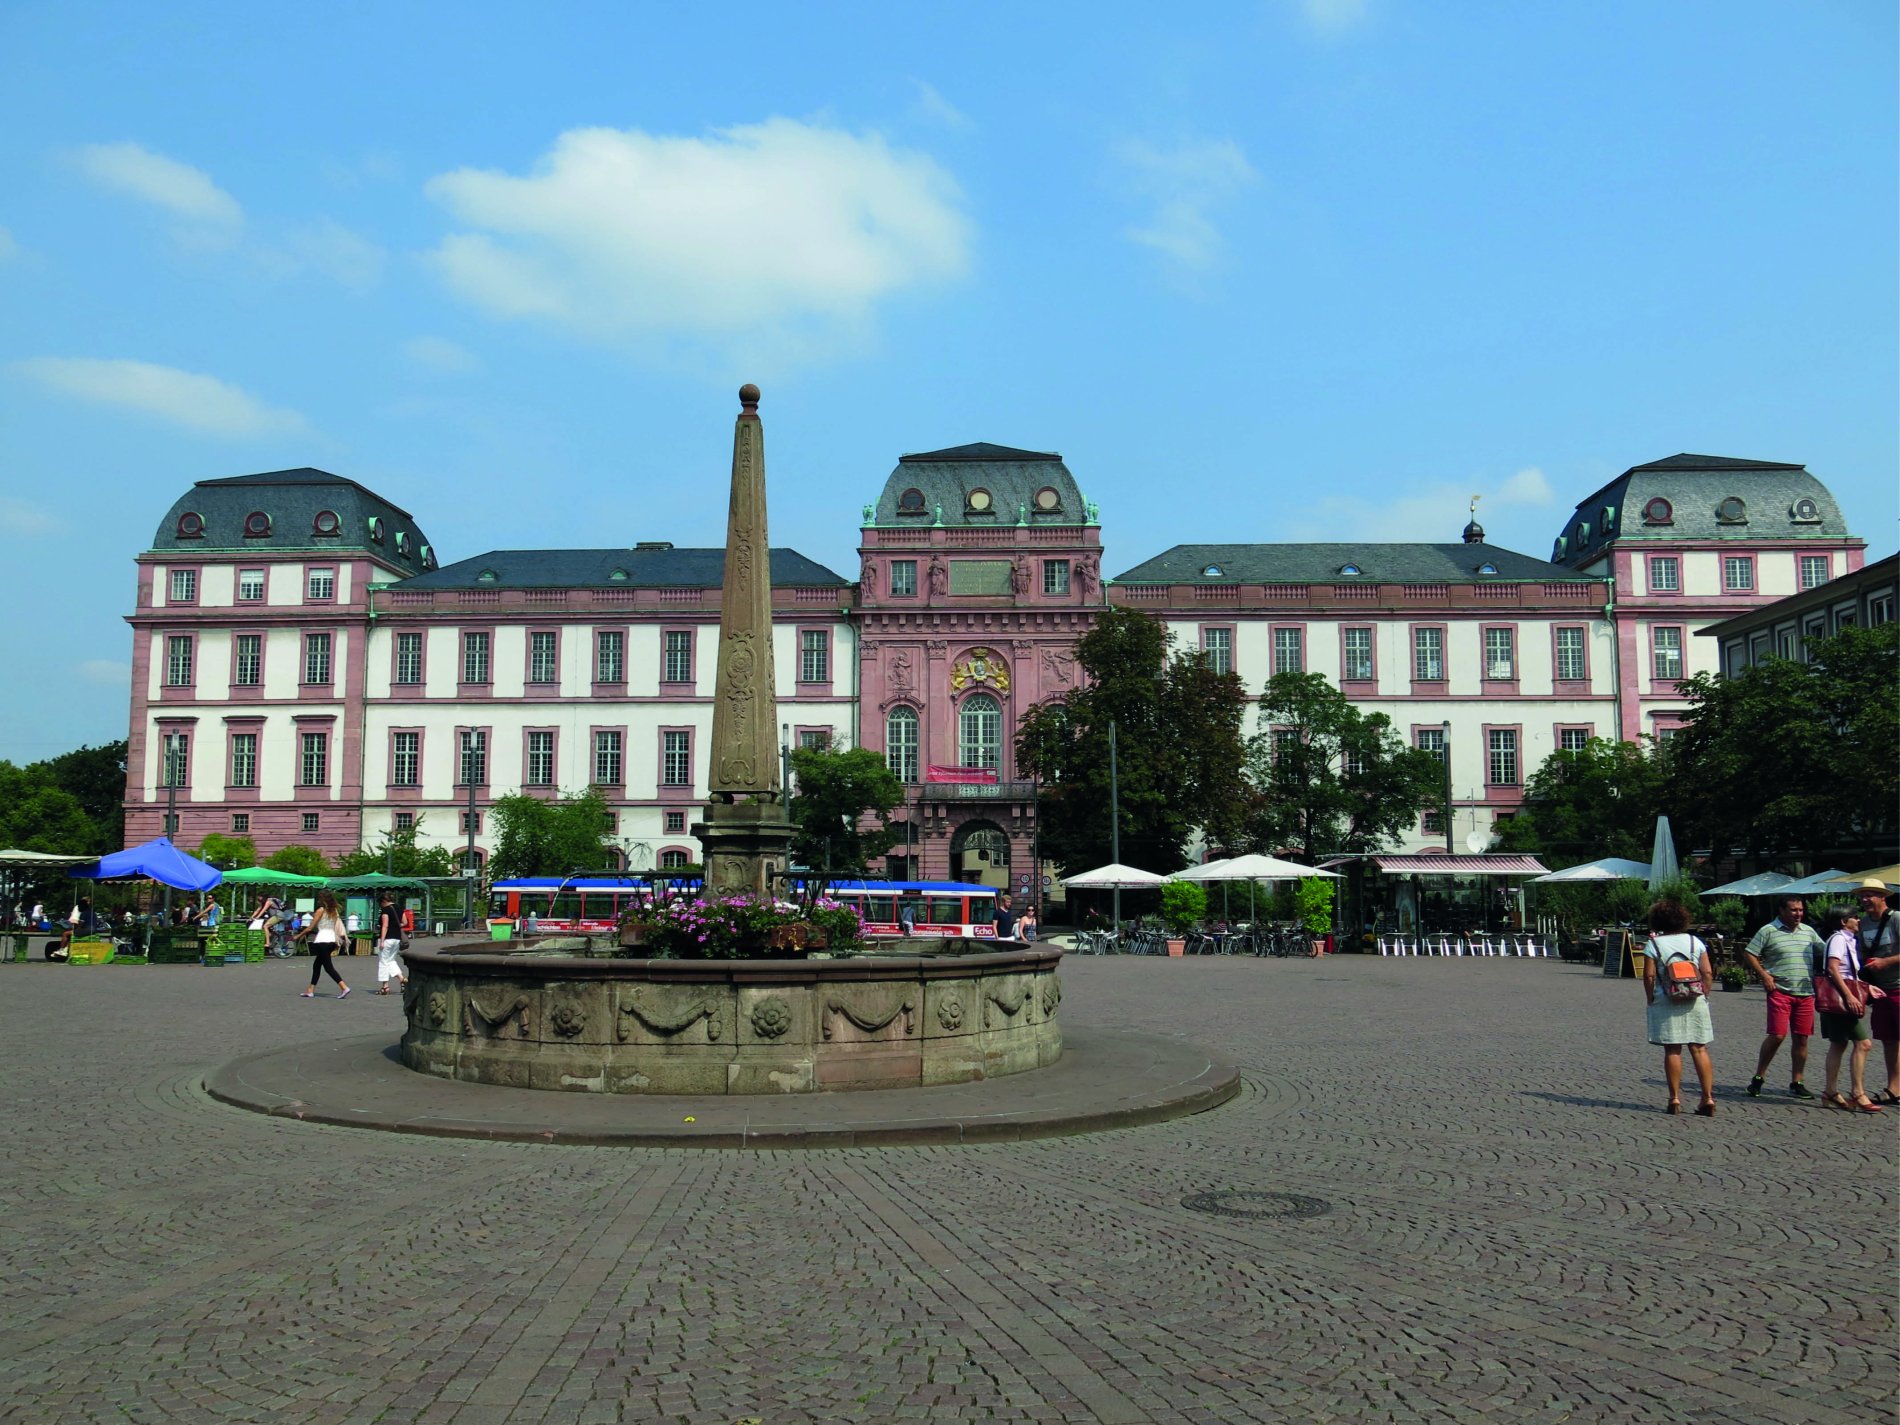 Im Vordergrund der Marktbrunnen aus dem 14. Jahrhundert, dahinter die Südfassade des Residenzschloss.